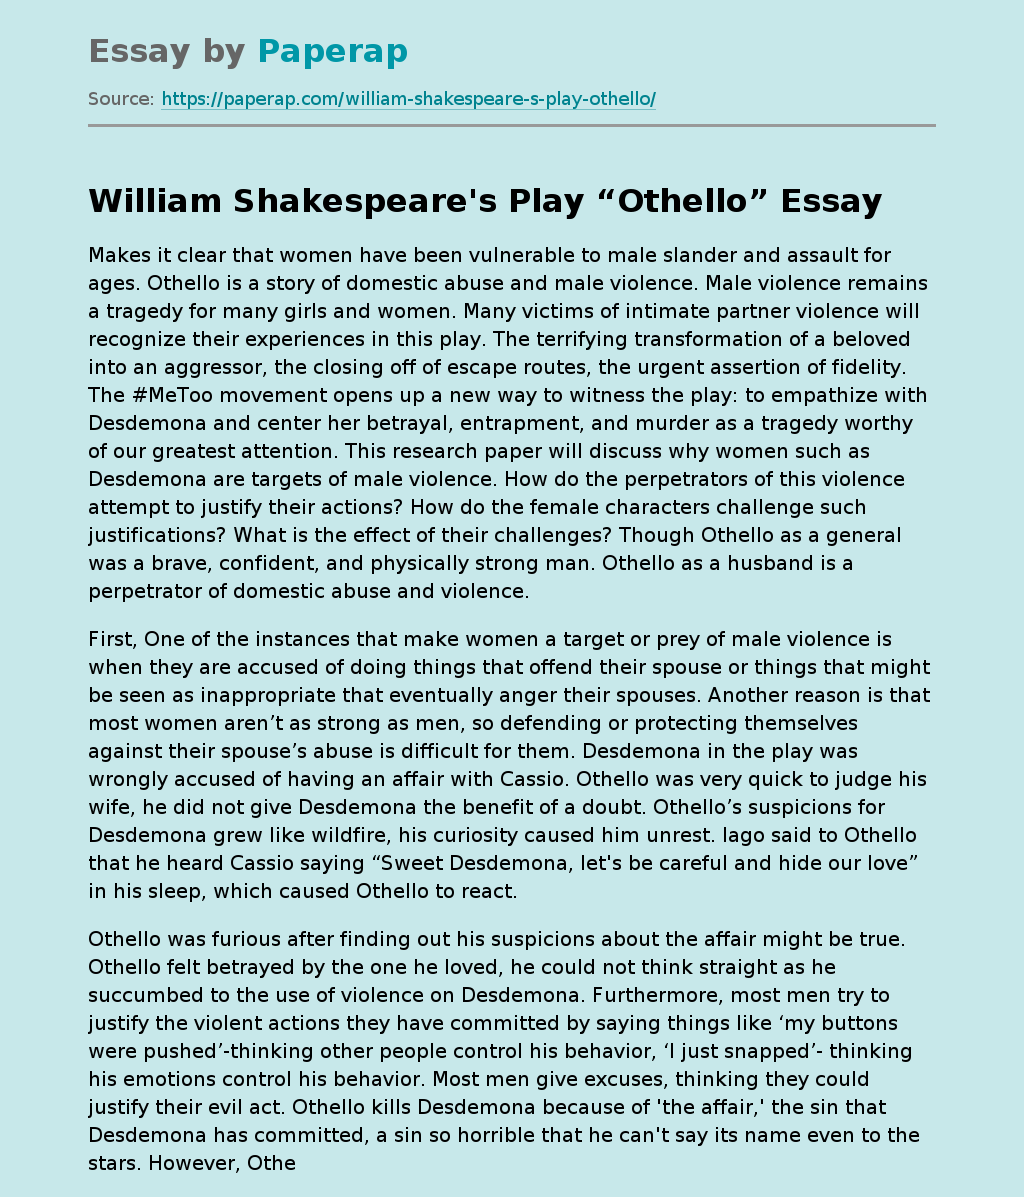 William Shakespeare's Play “Othello”